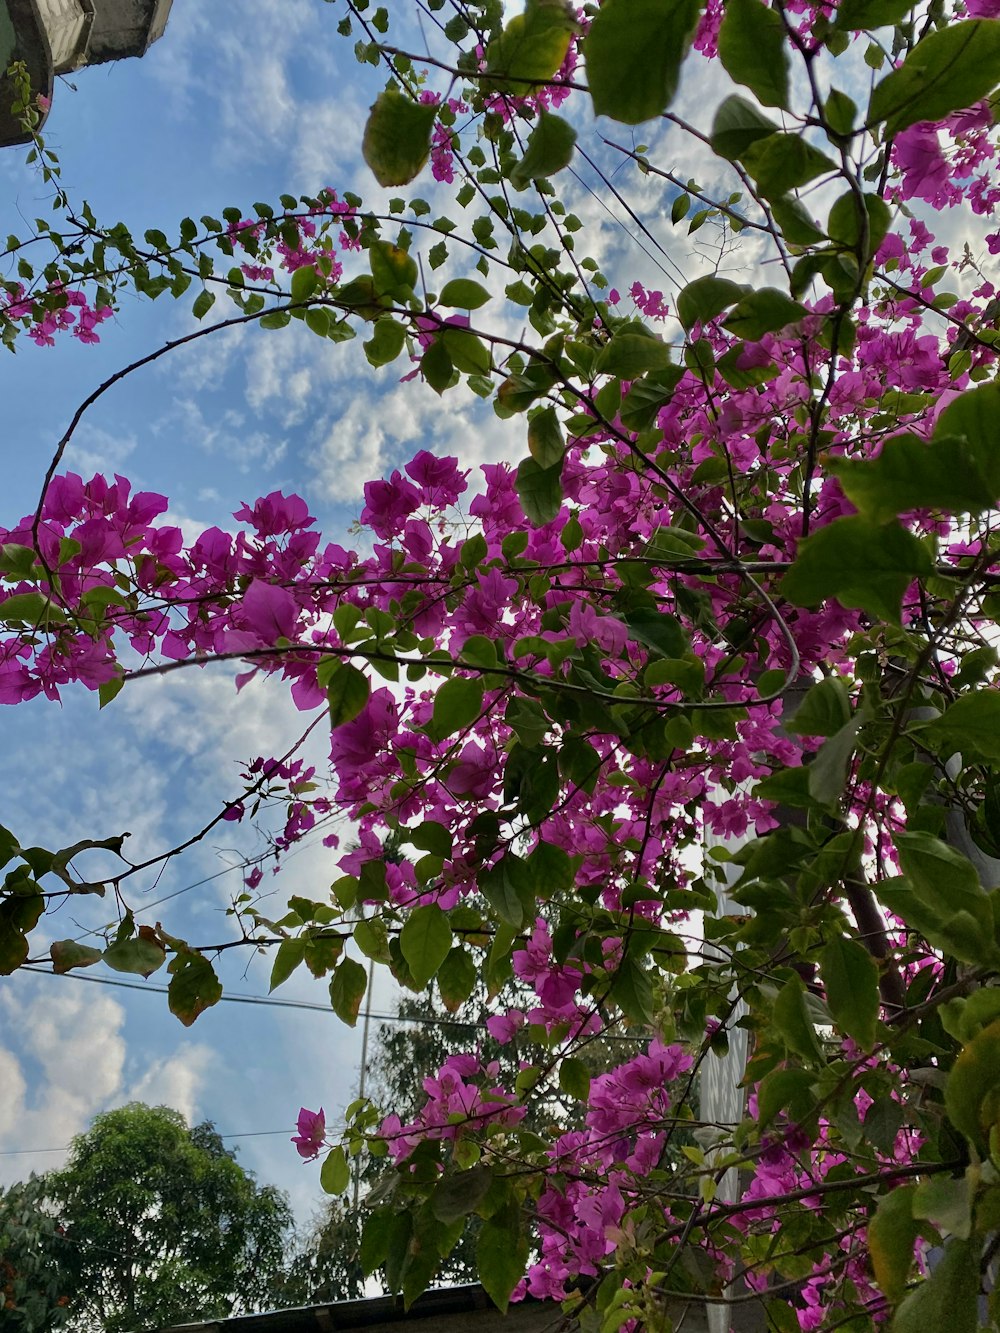 Des fleurs violettes fleurissent sur les branches d’un arbre